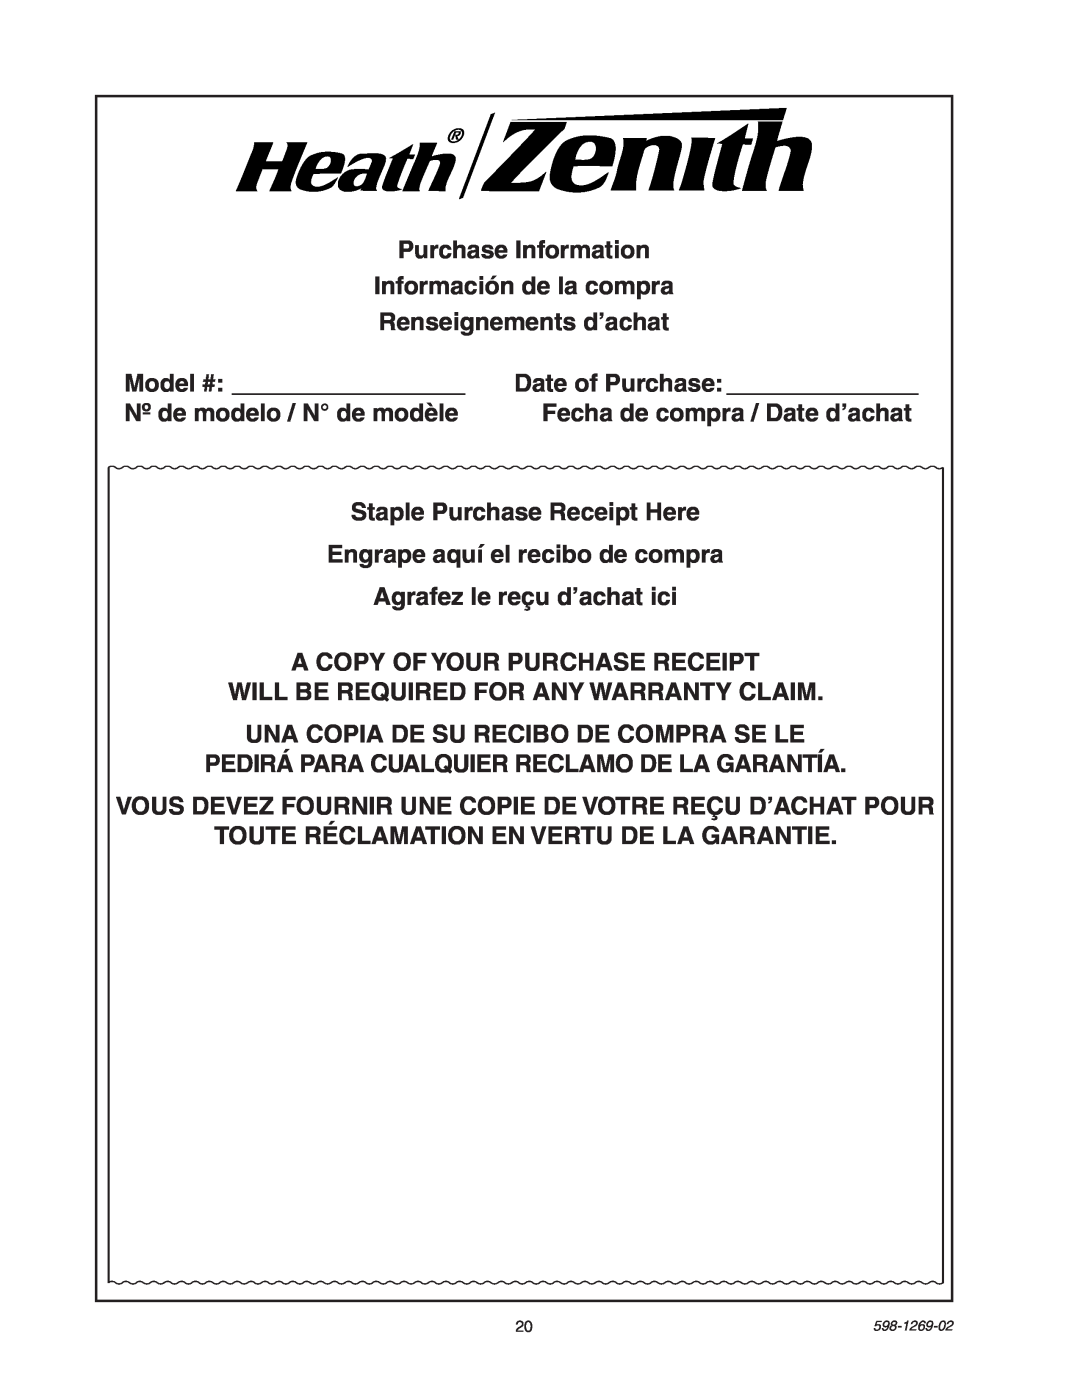 Heath Zenith 5326 manual Purchase Information Información de la compra 